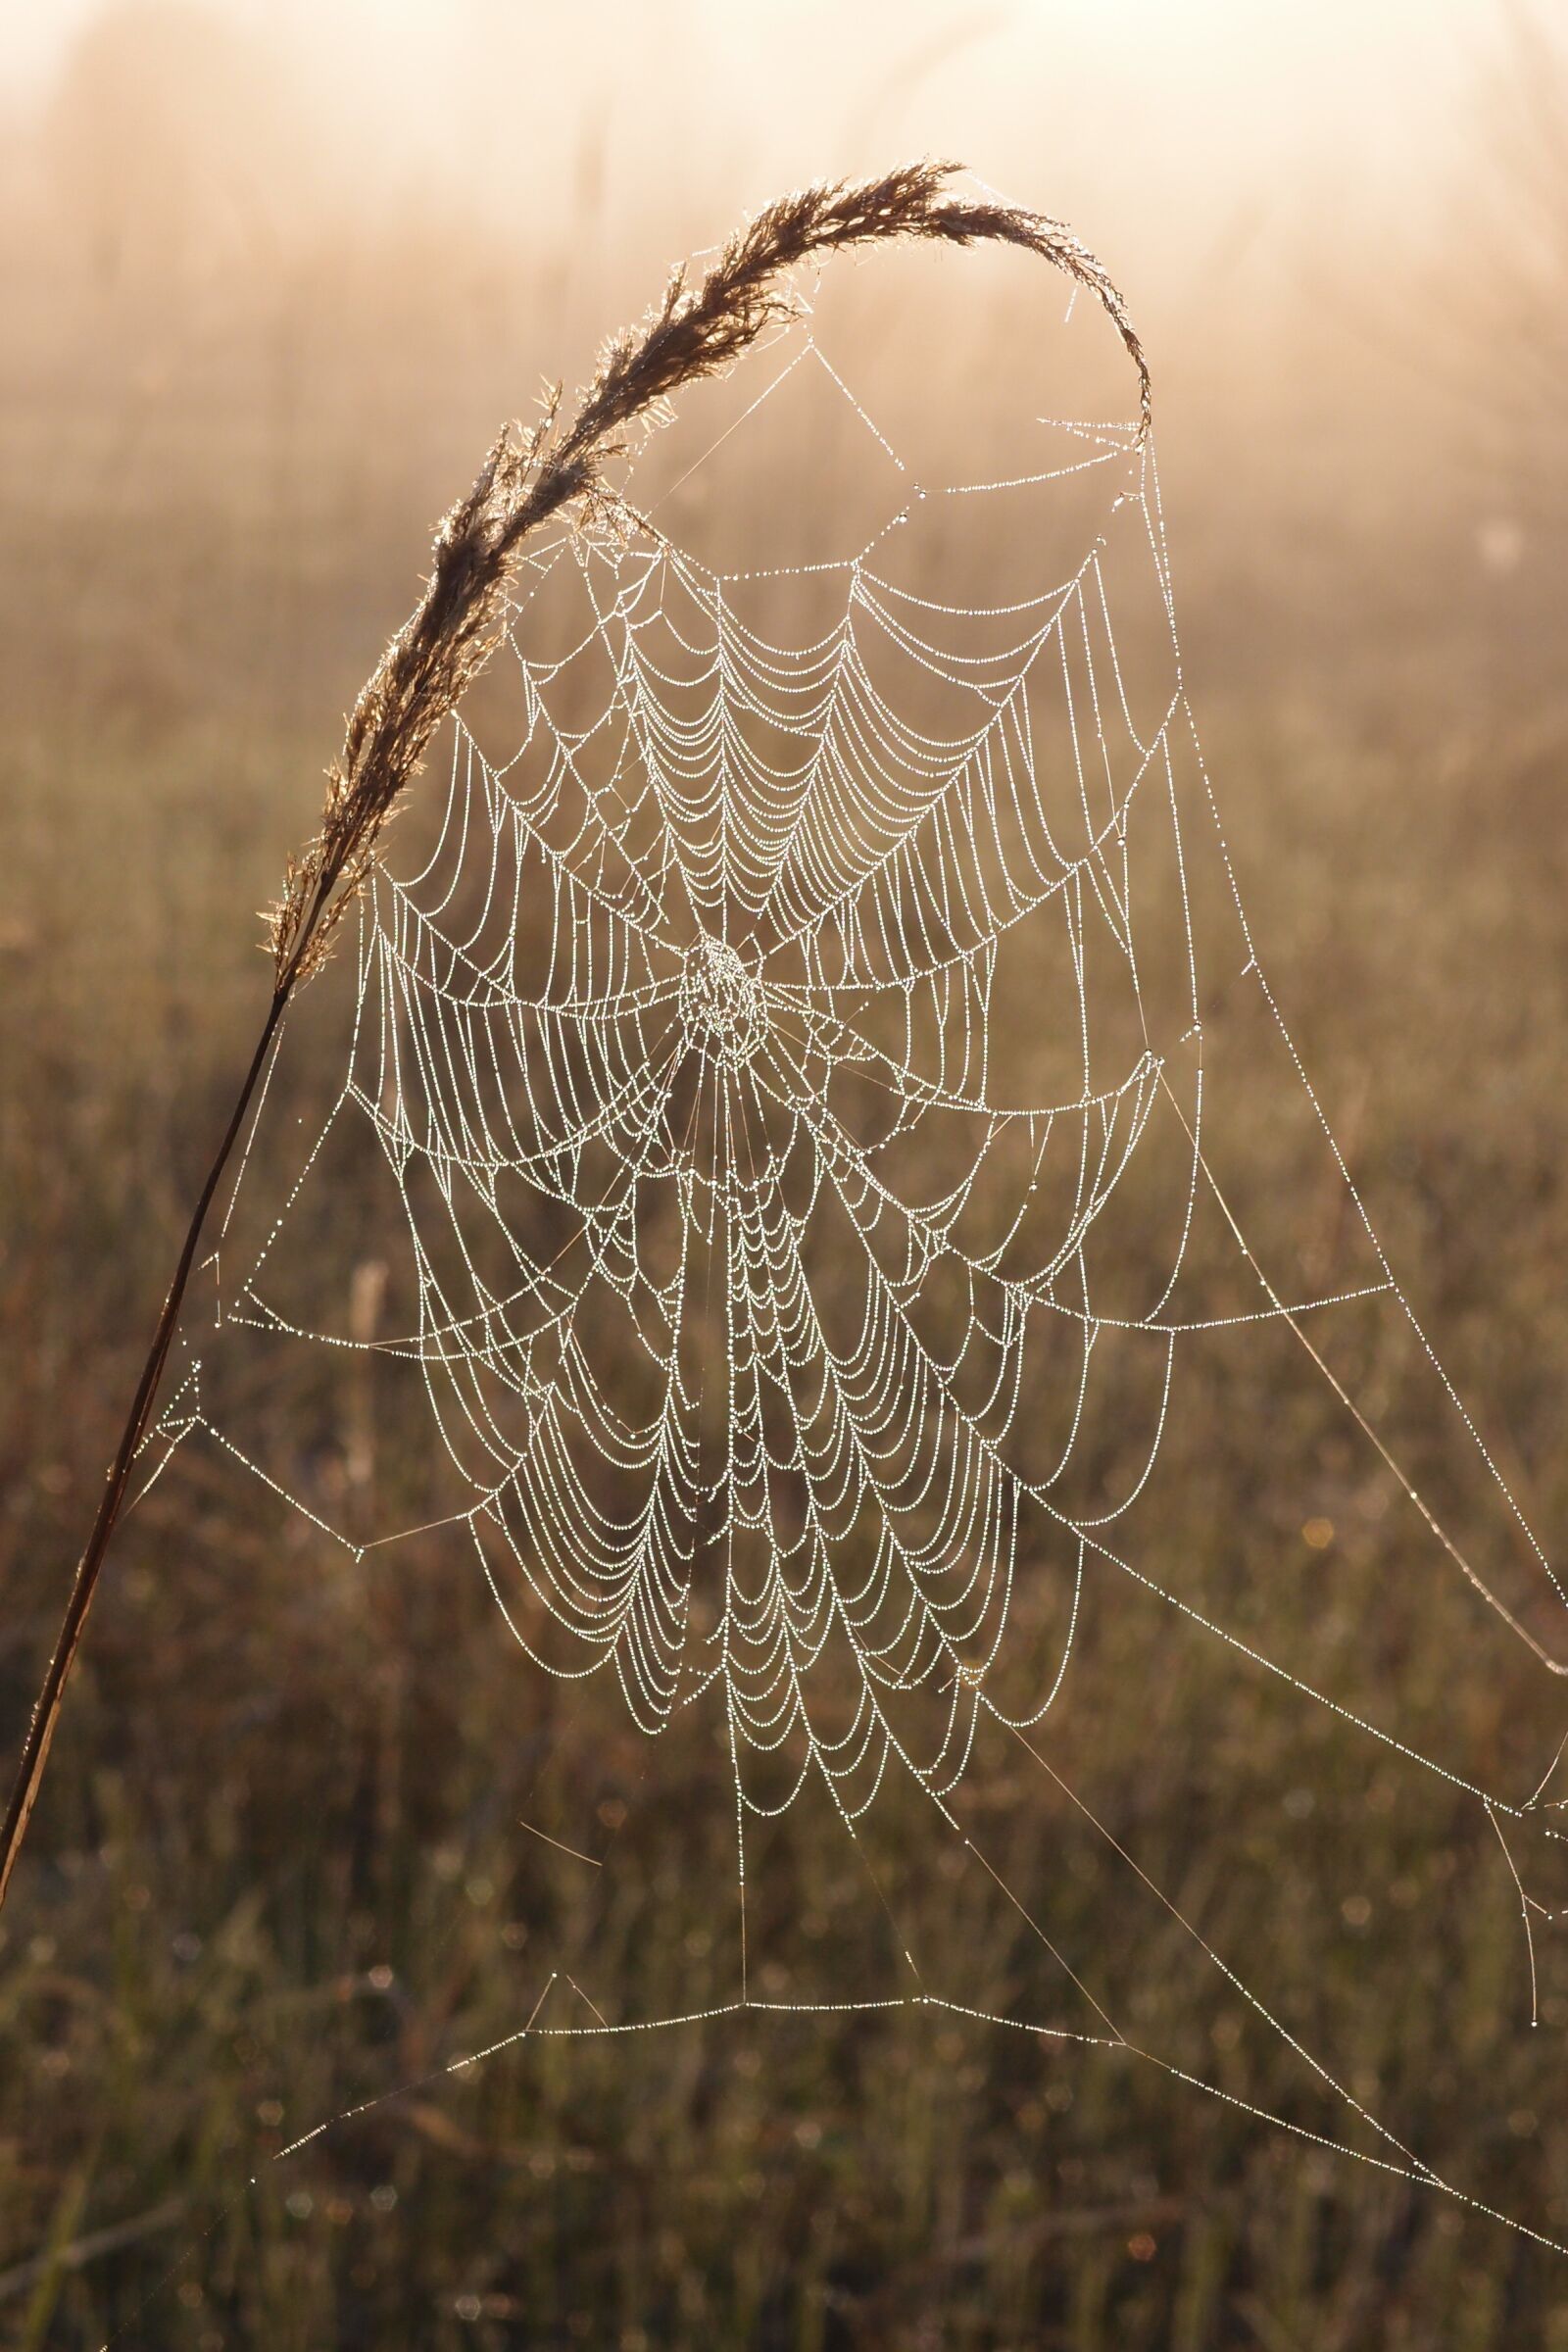 Olympus XZ-1 sample photo. Spider web, rosa, morning photography